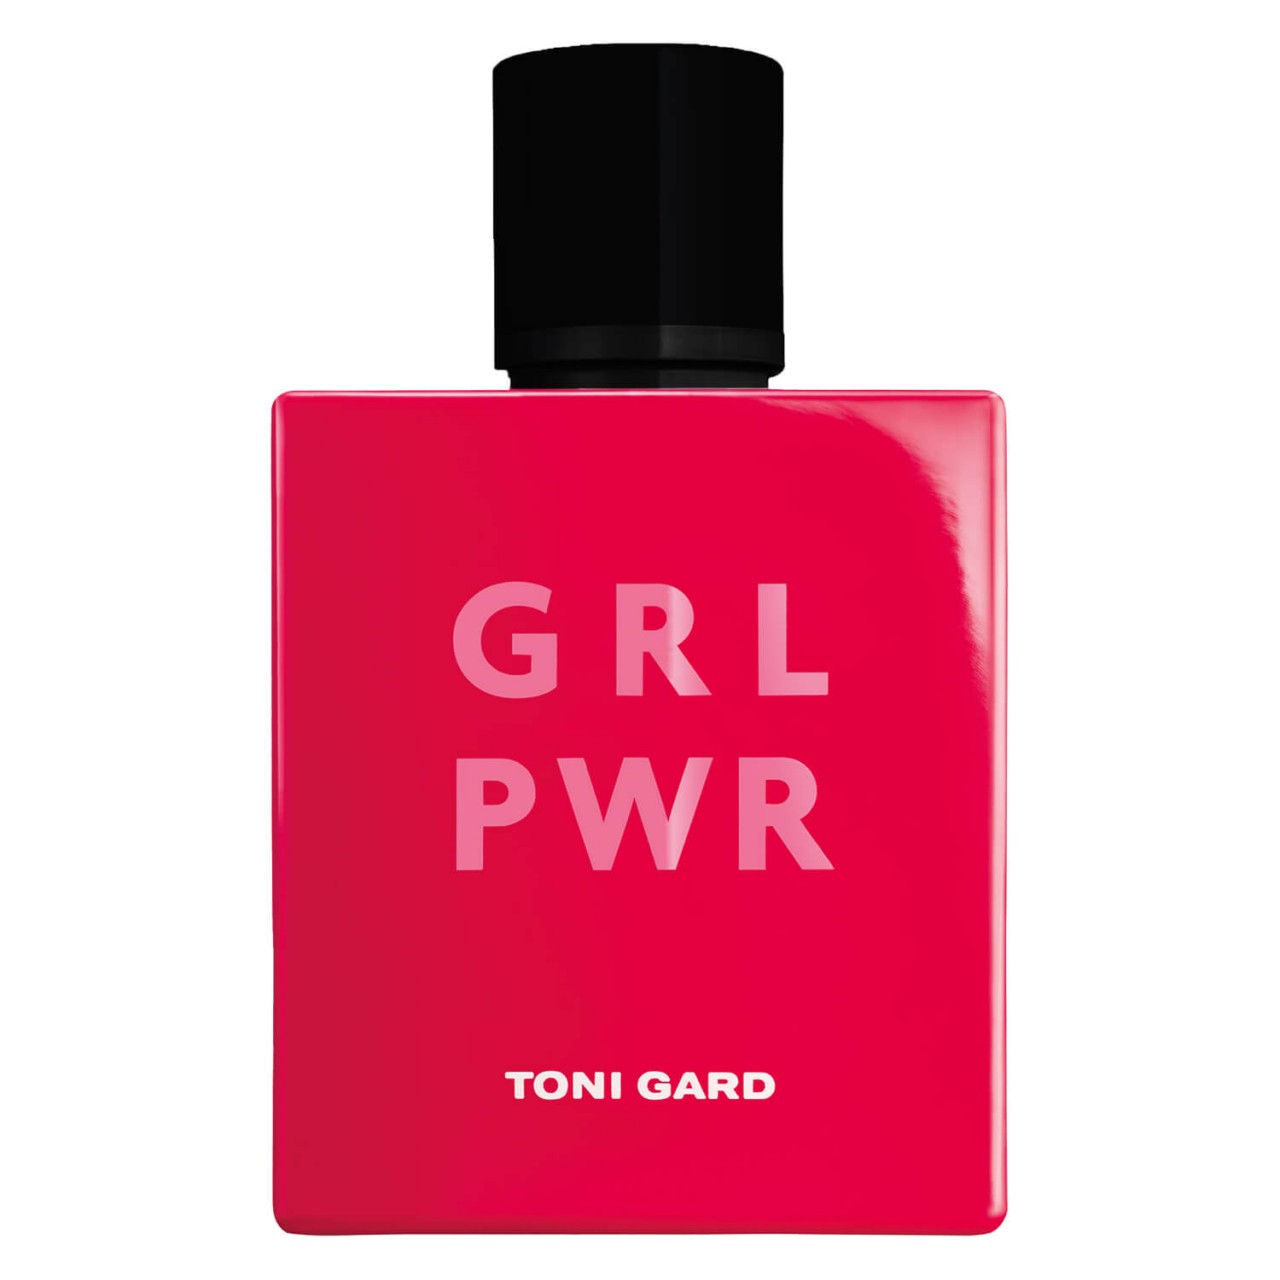 TONI GARD - GRL PWR Eau de Parfum von TONI GARD